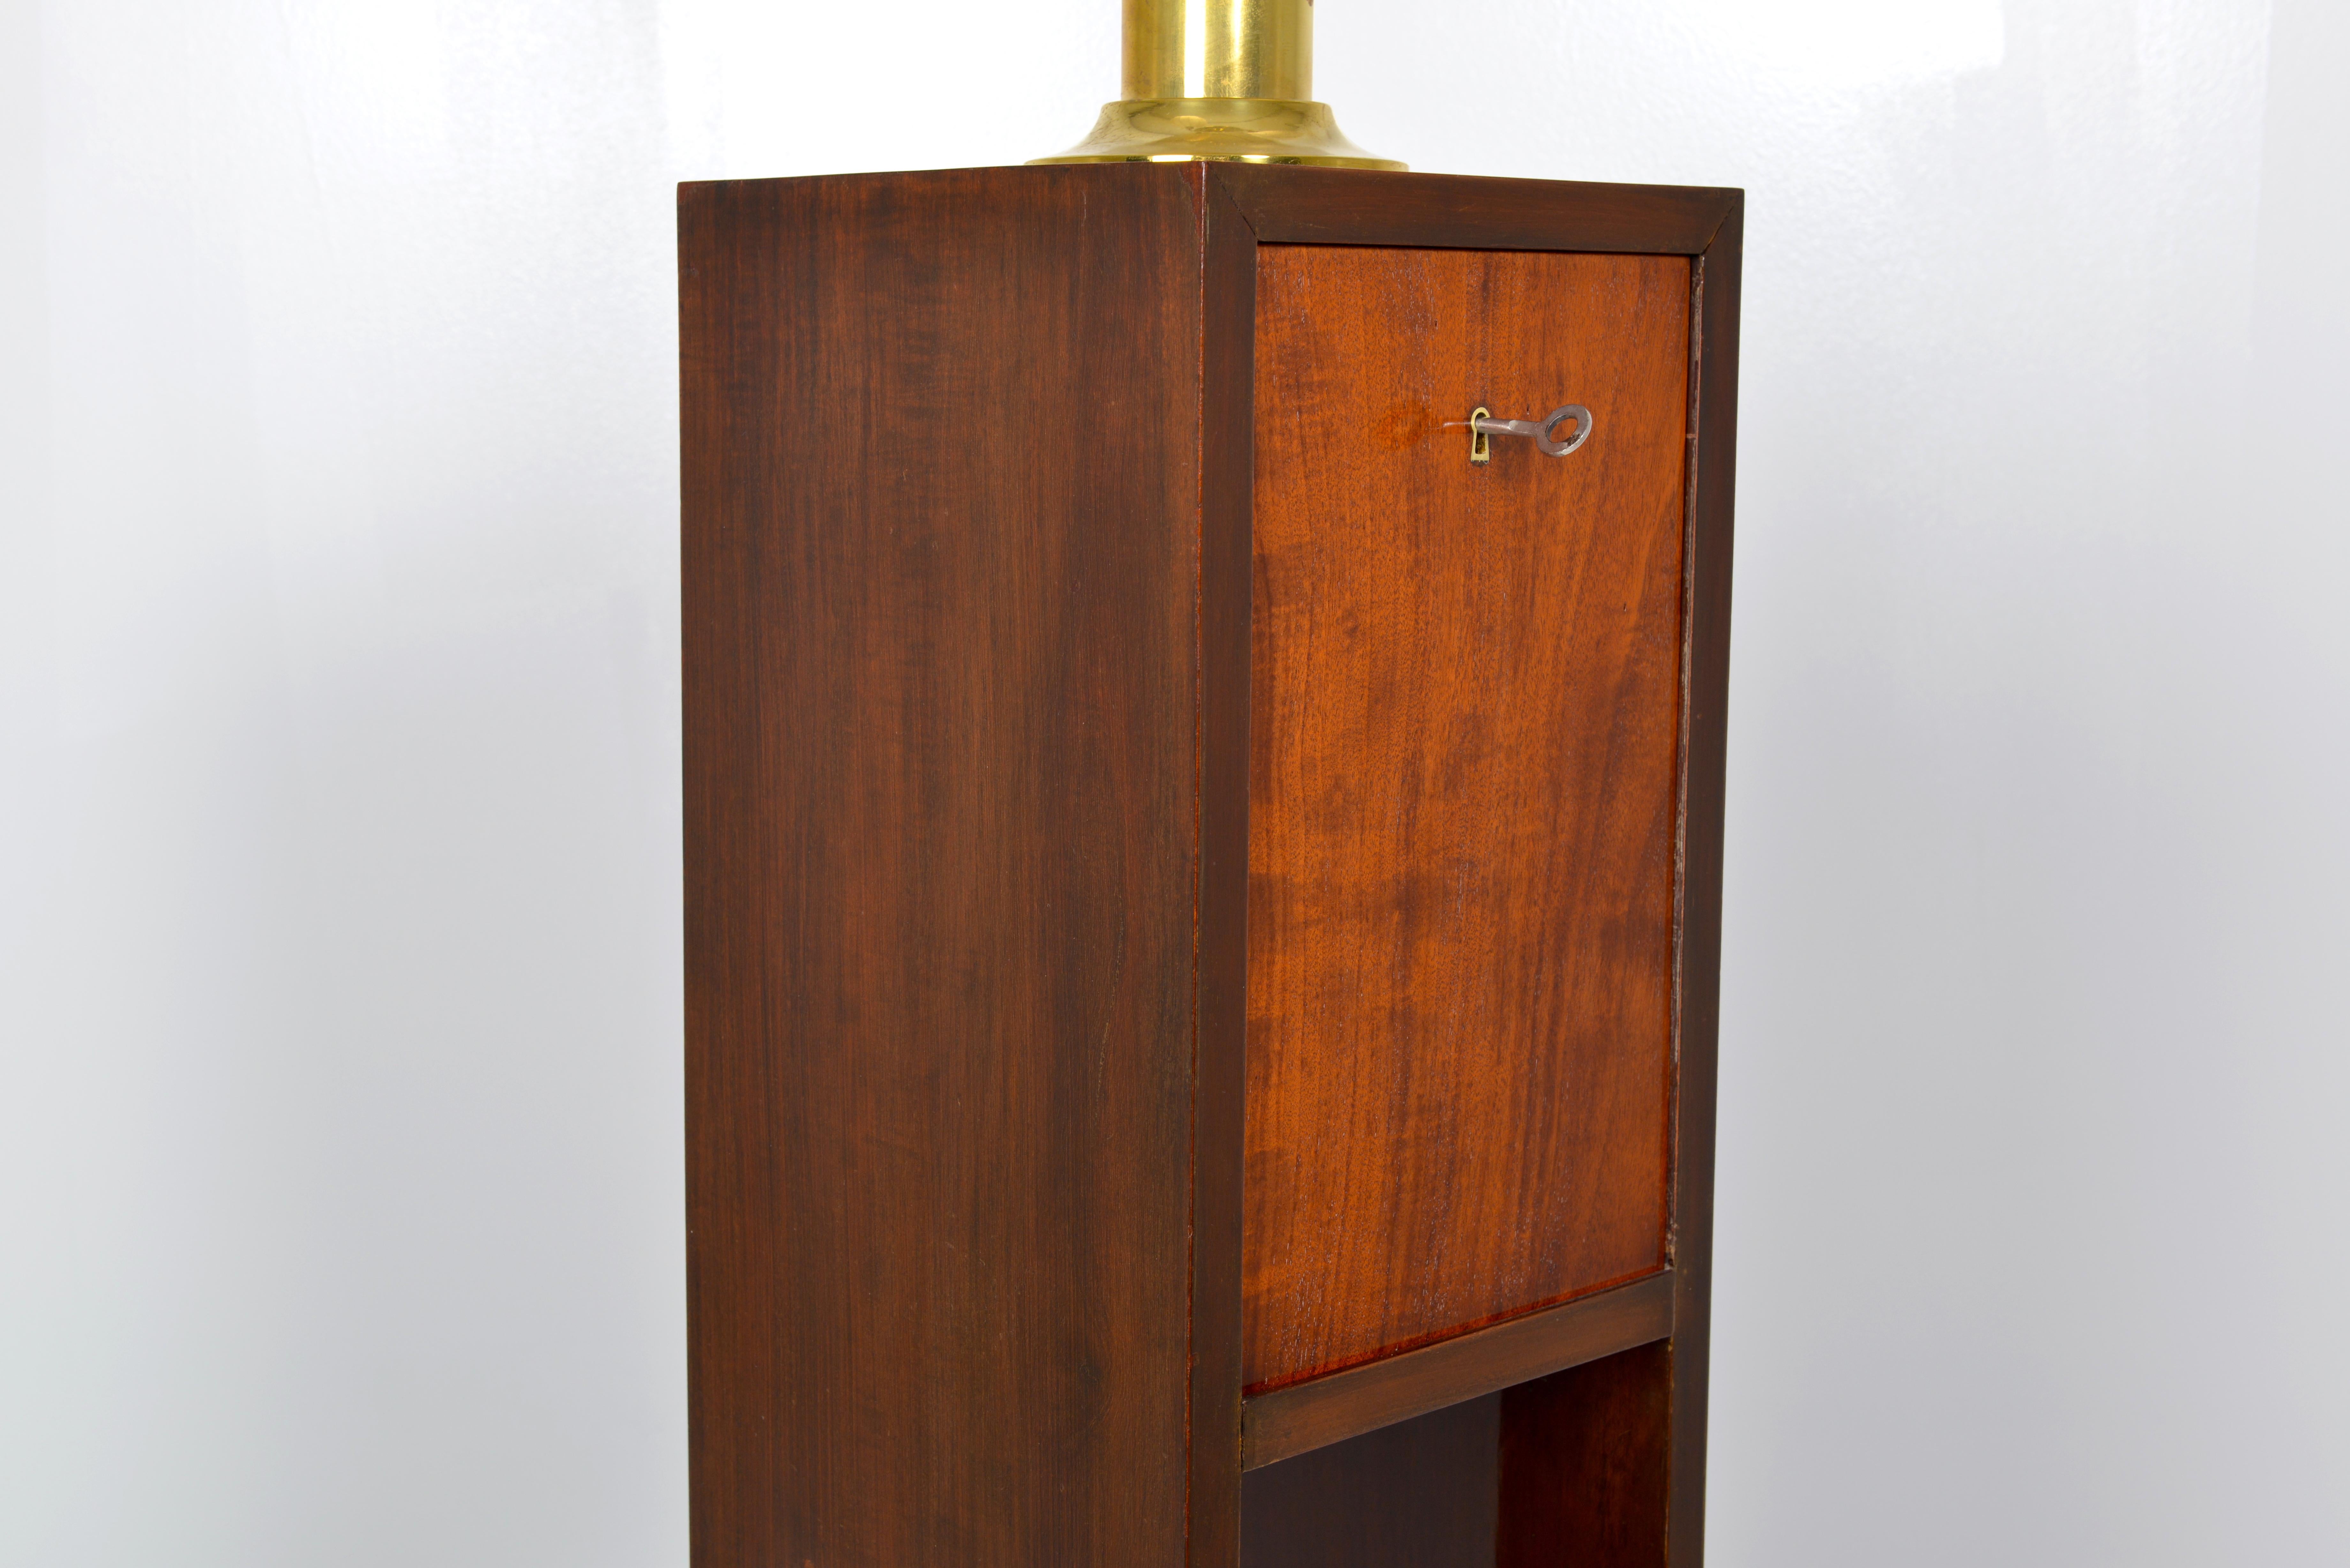 Belgian Art Deco Mahogany Standard Lamp, circa 1930 For Sale 3